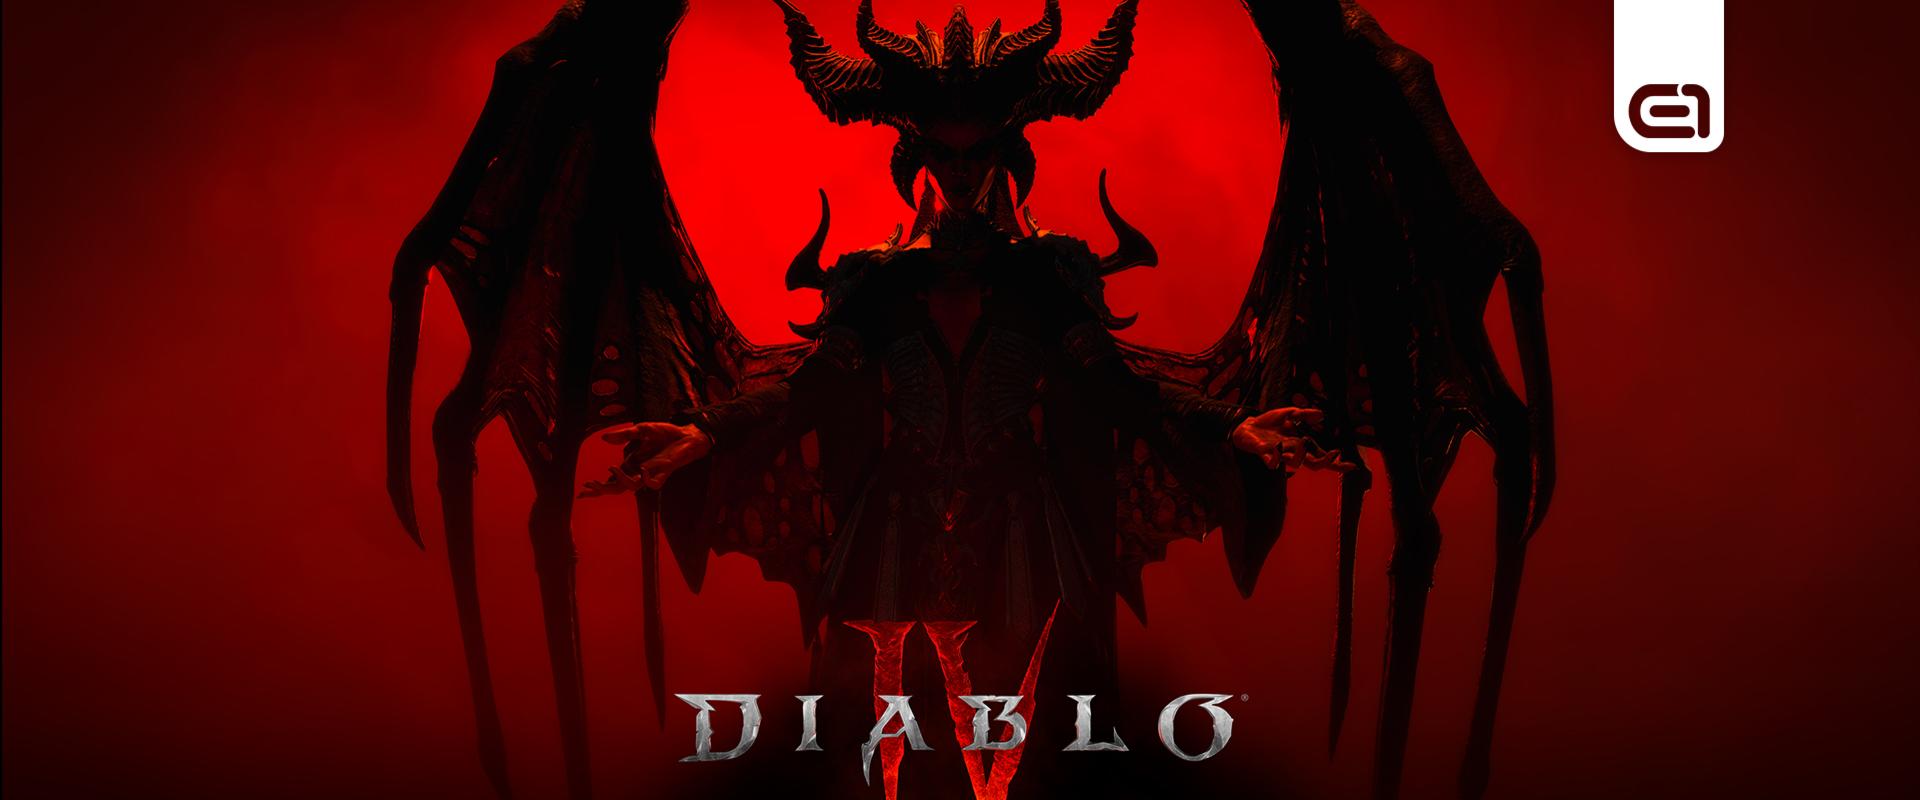 Újabb béta tesztet jelentettek be a Diablo IV-nek